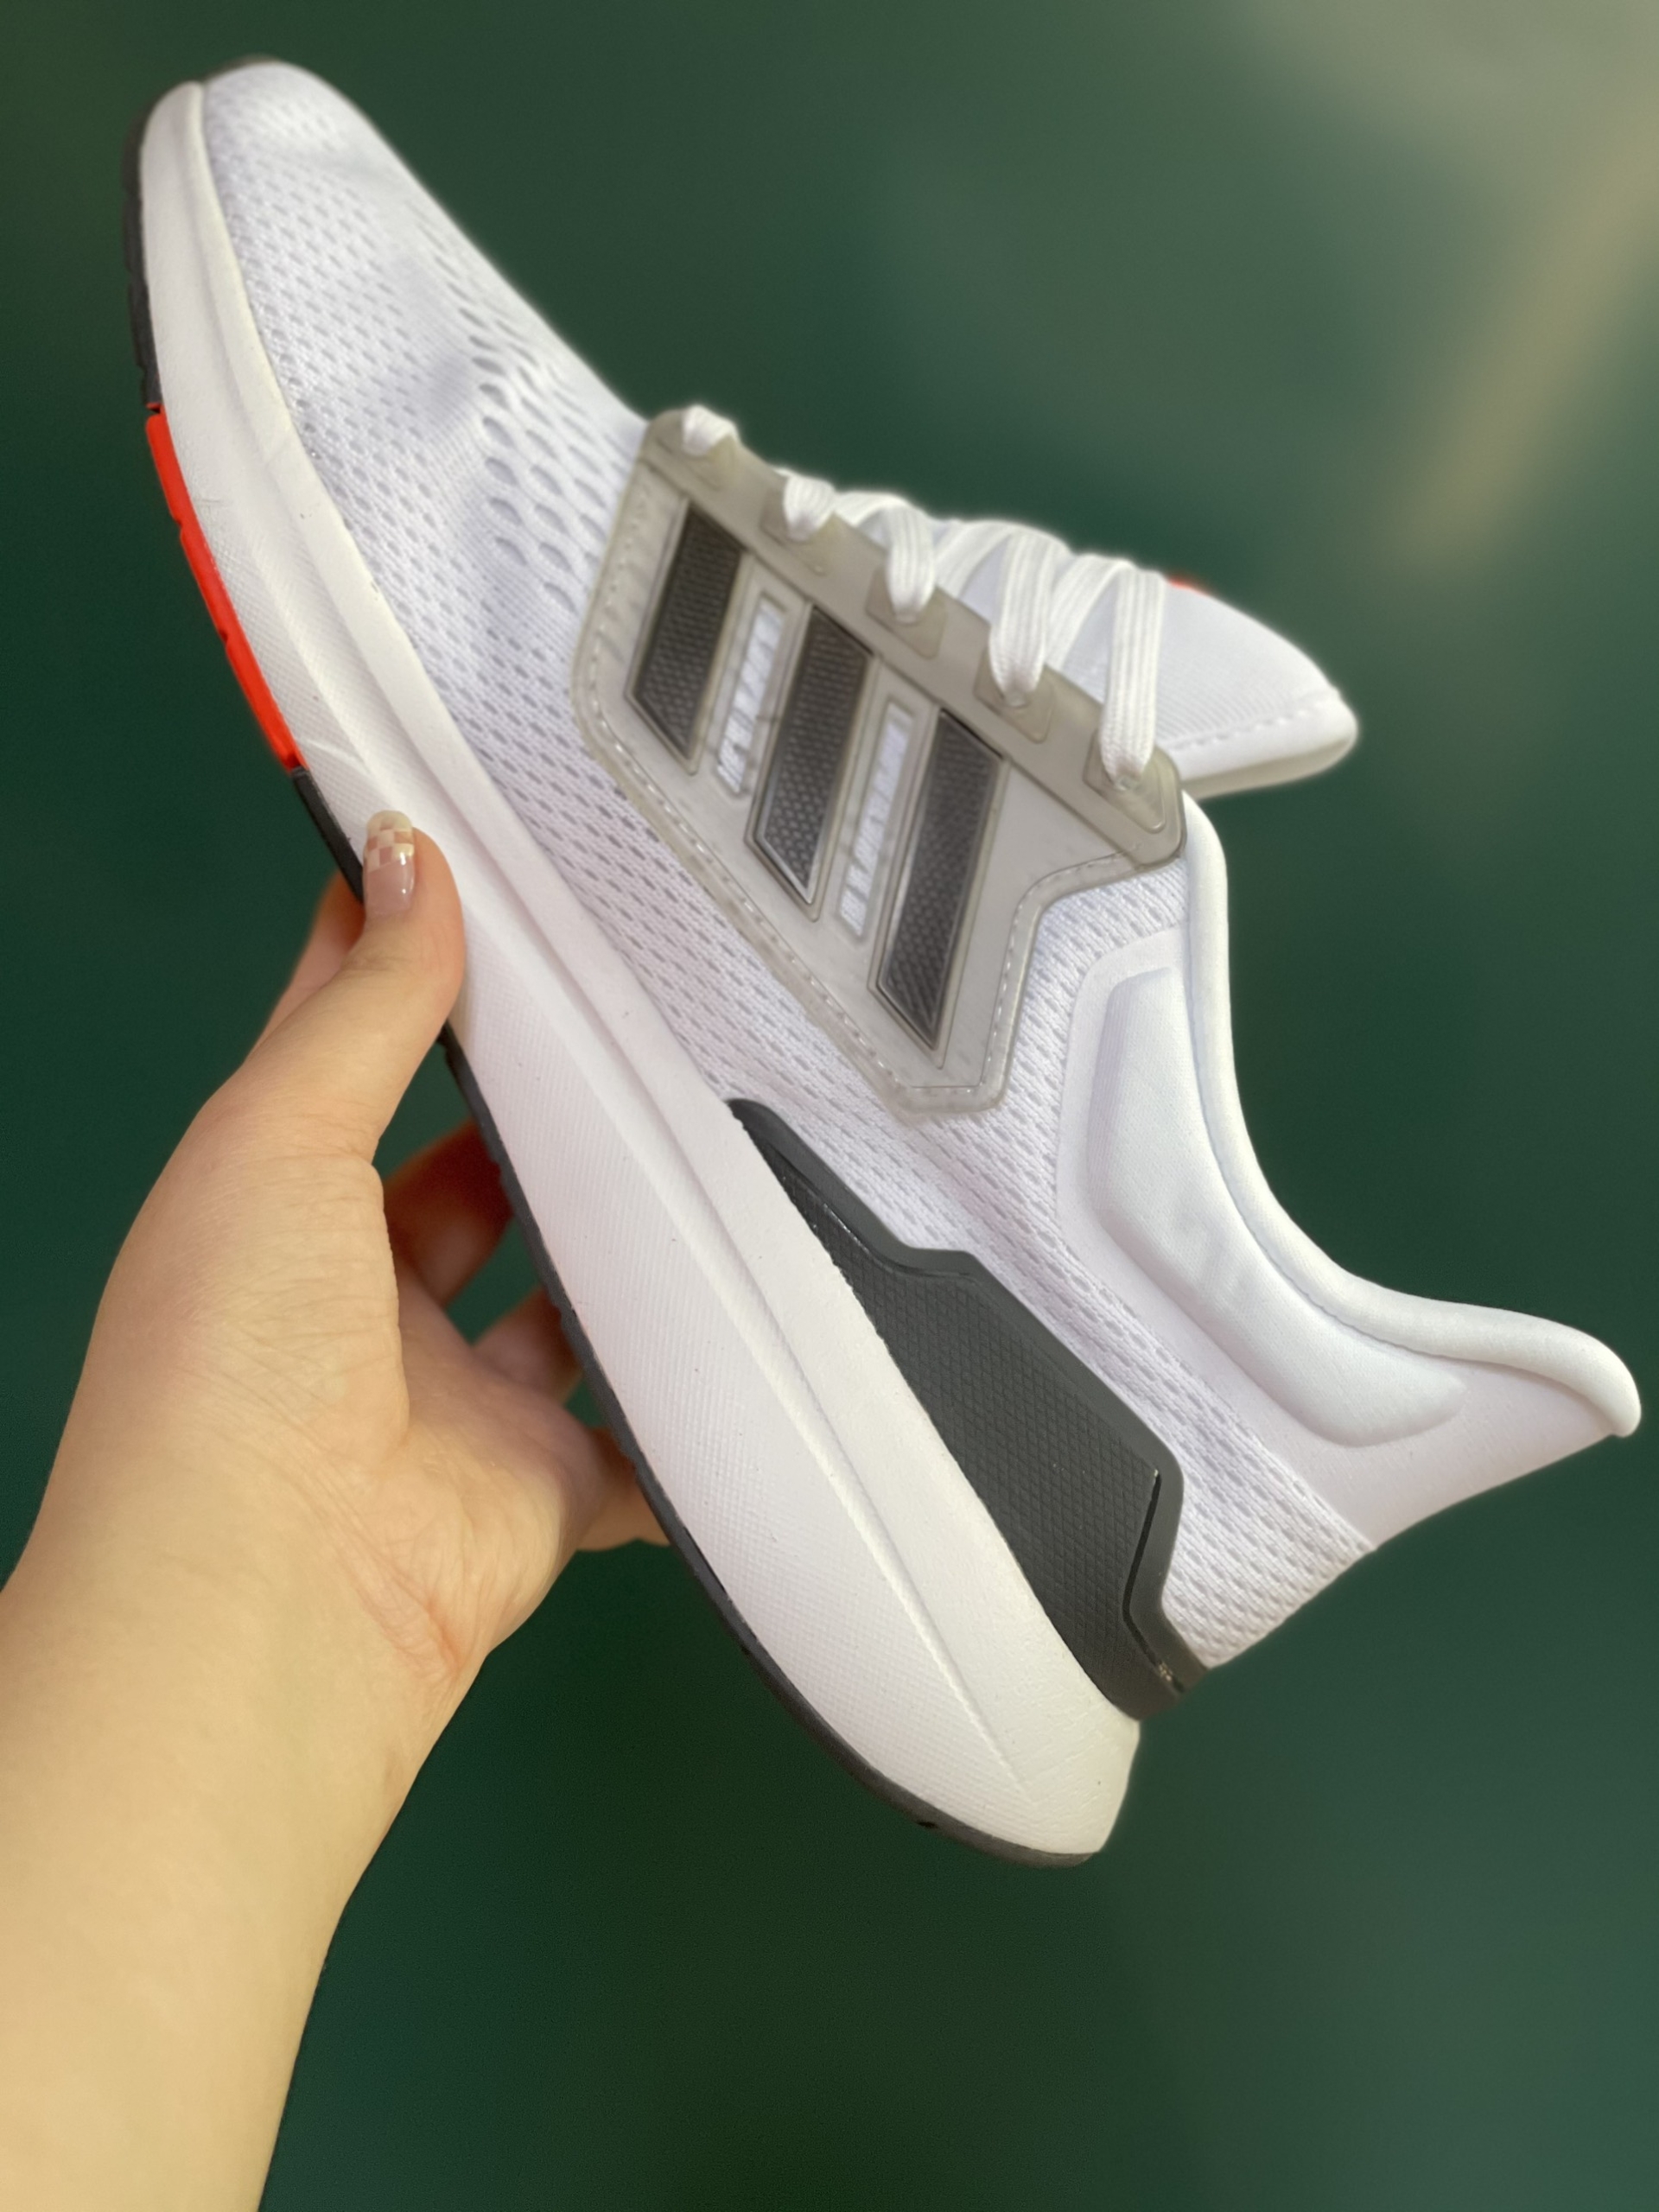 Giày Chạy Bộ Adidas EQ21 Trắng Cam Rep 1:1